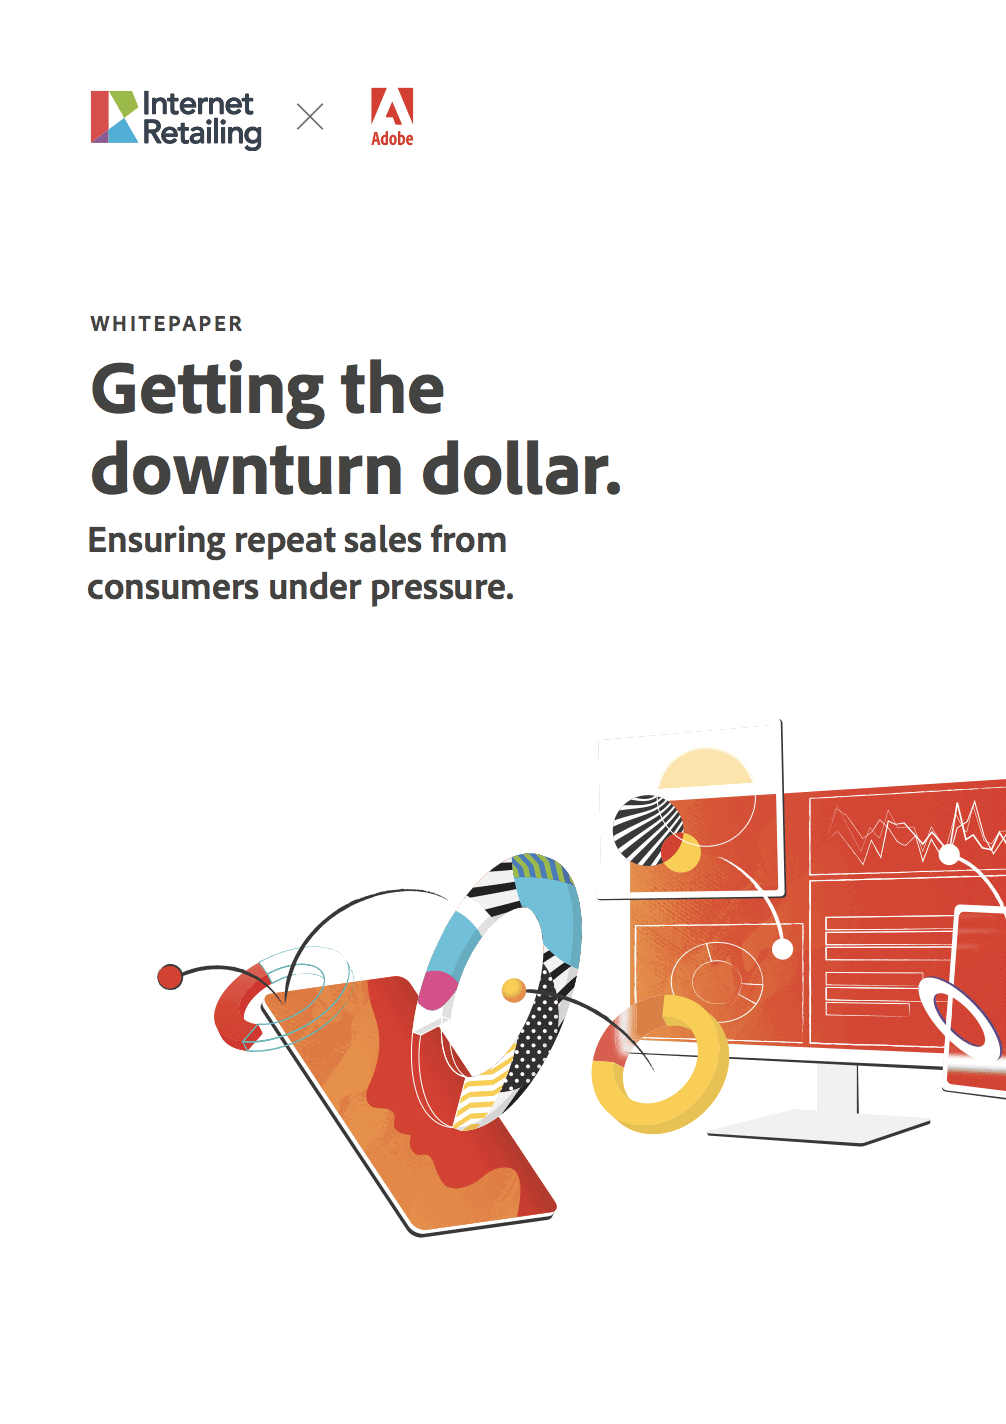 Adobe: Getting the downturn dollar